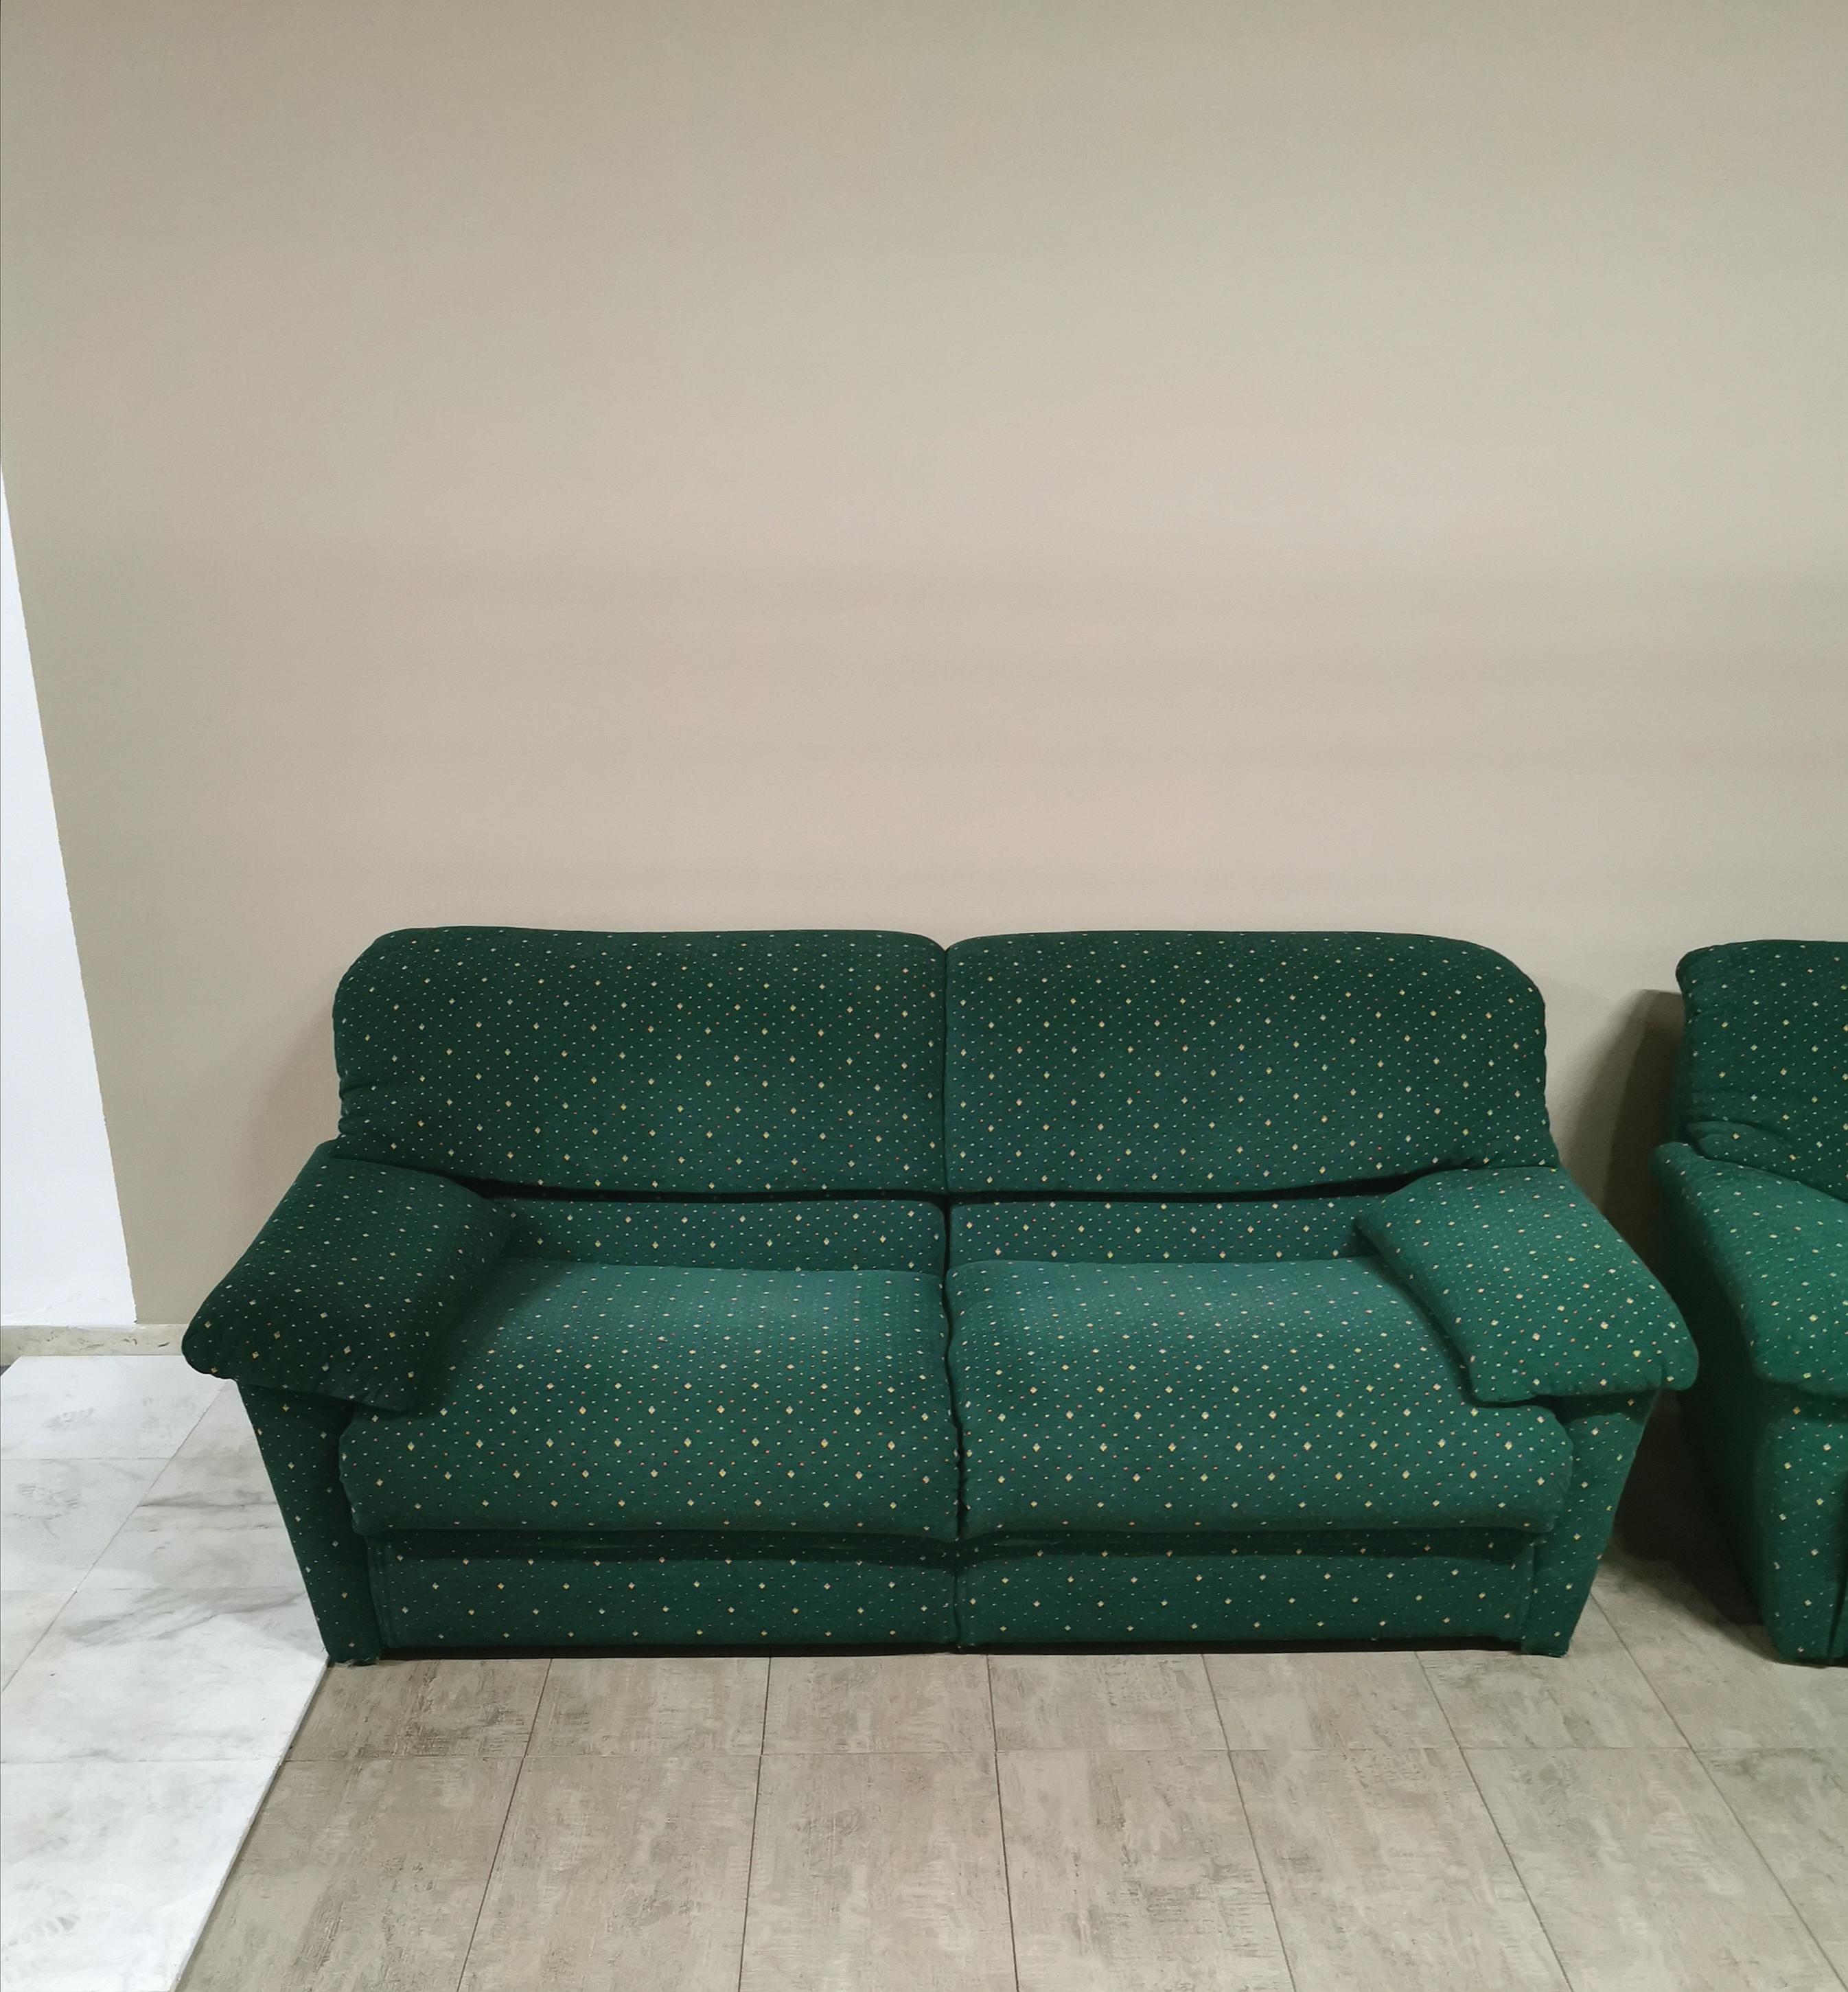 Post-Modern Sofas Living Room Green Velvet by Pol 74 Postmodern 2 3 Seat Italy 1990 Set of 2